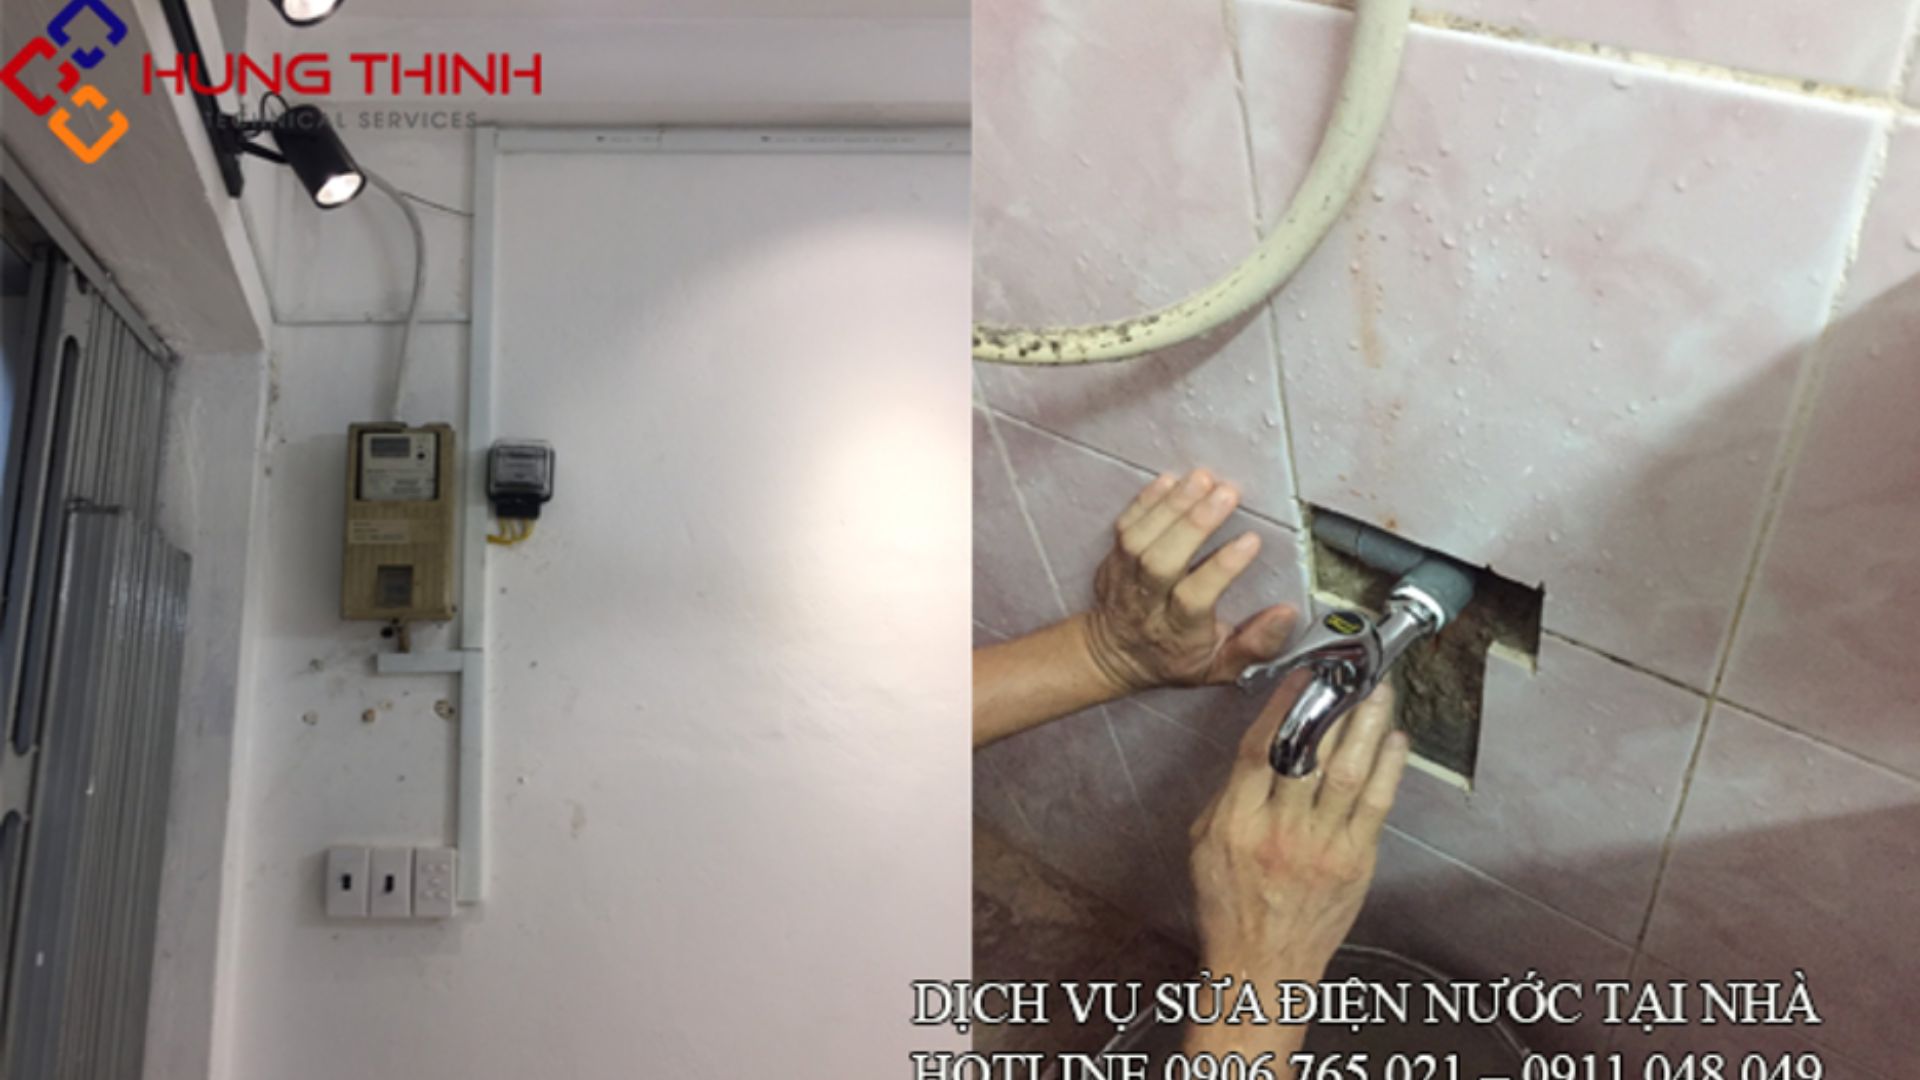 Điện nước Hưng Thịnh - Chuyên sửa điện giá tốt tại Đà Nẵng 